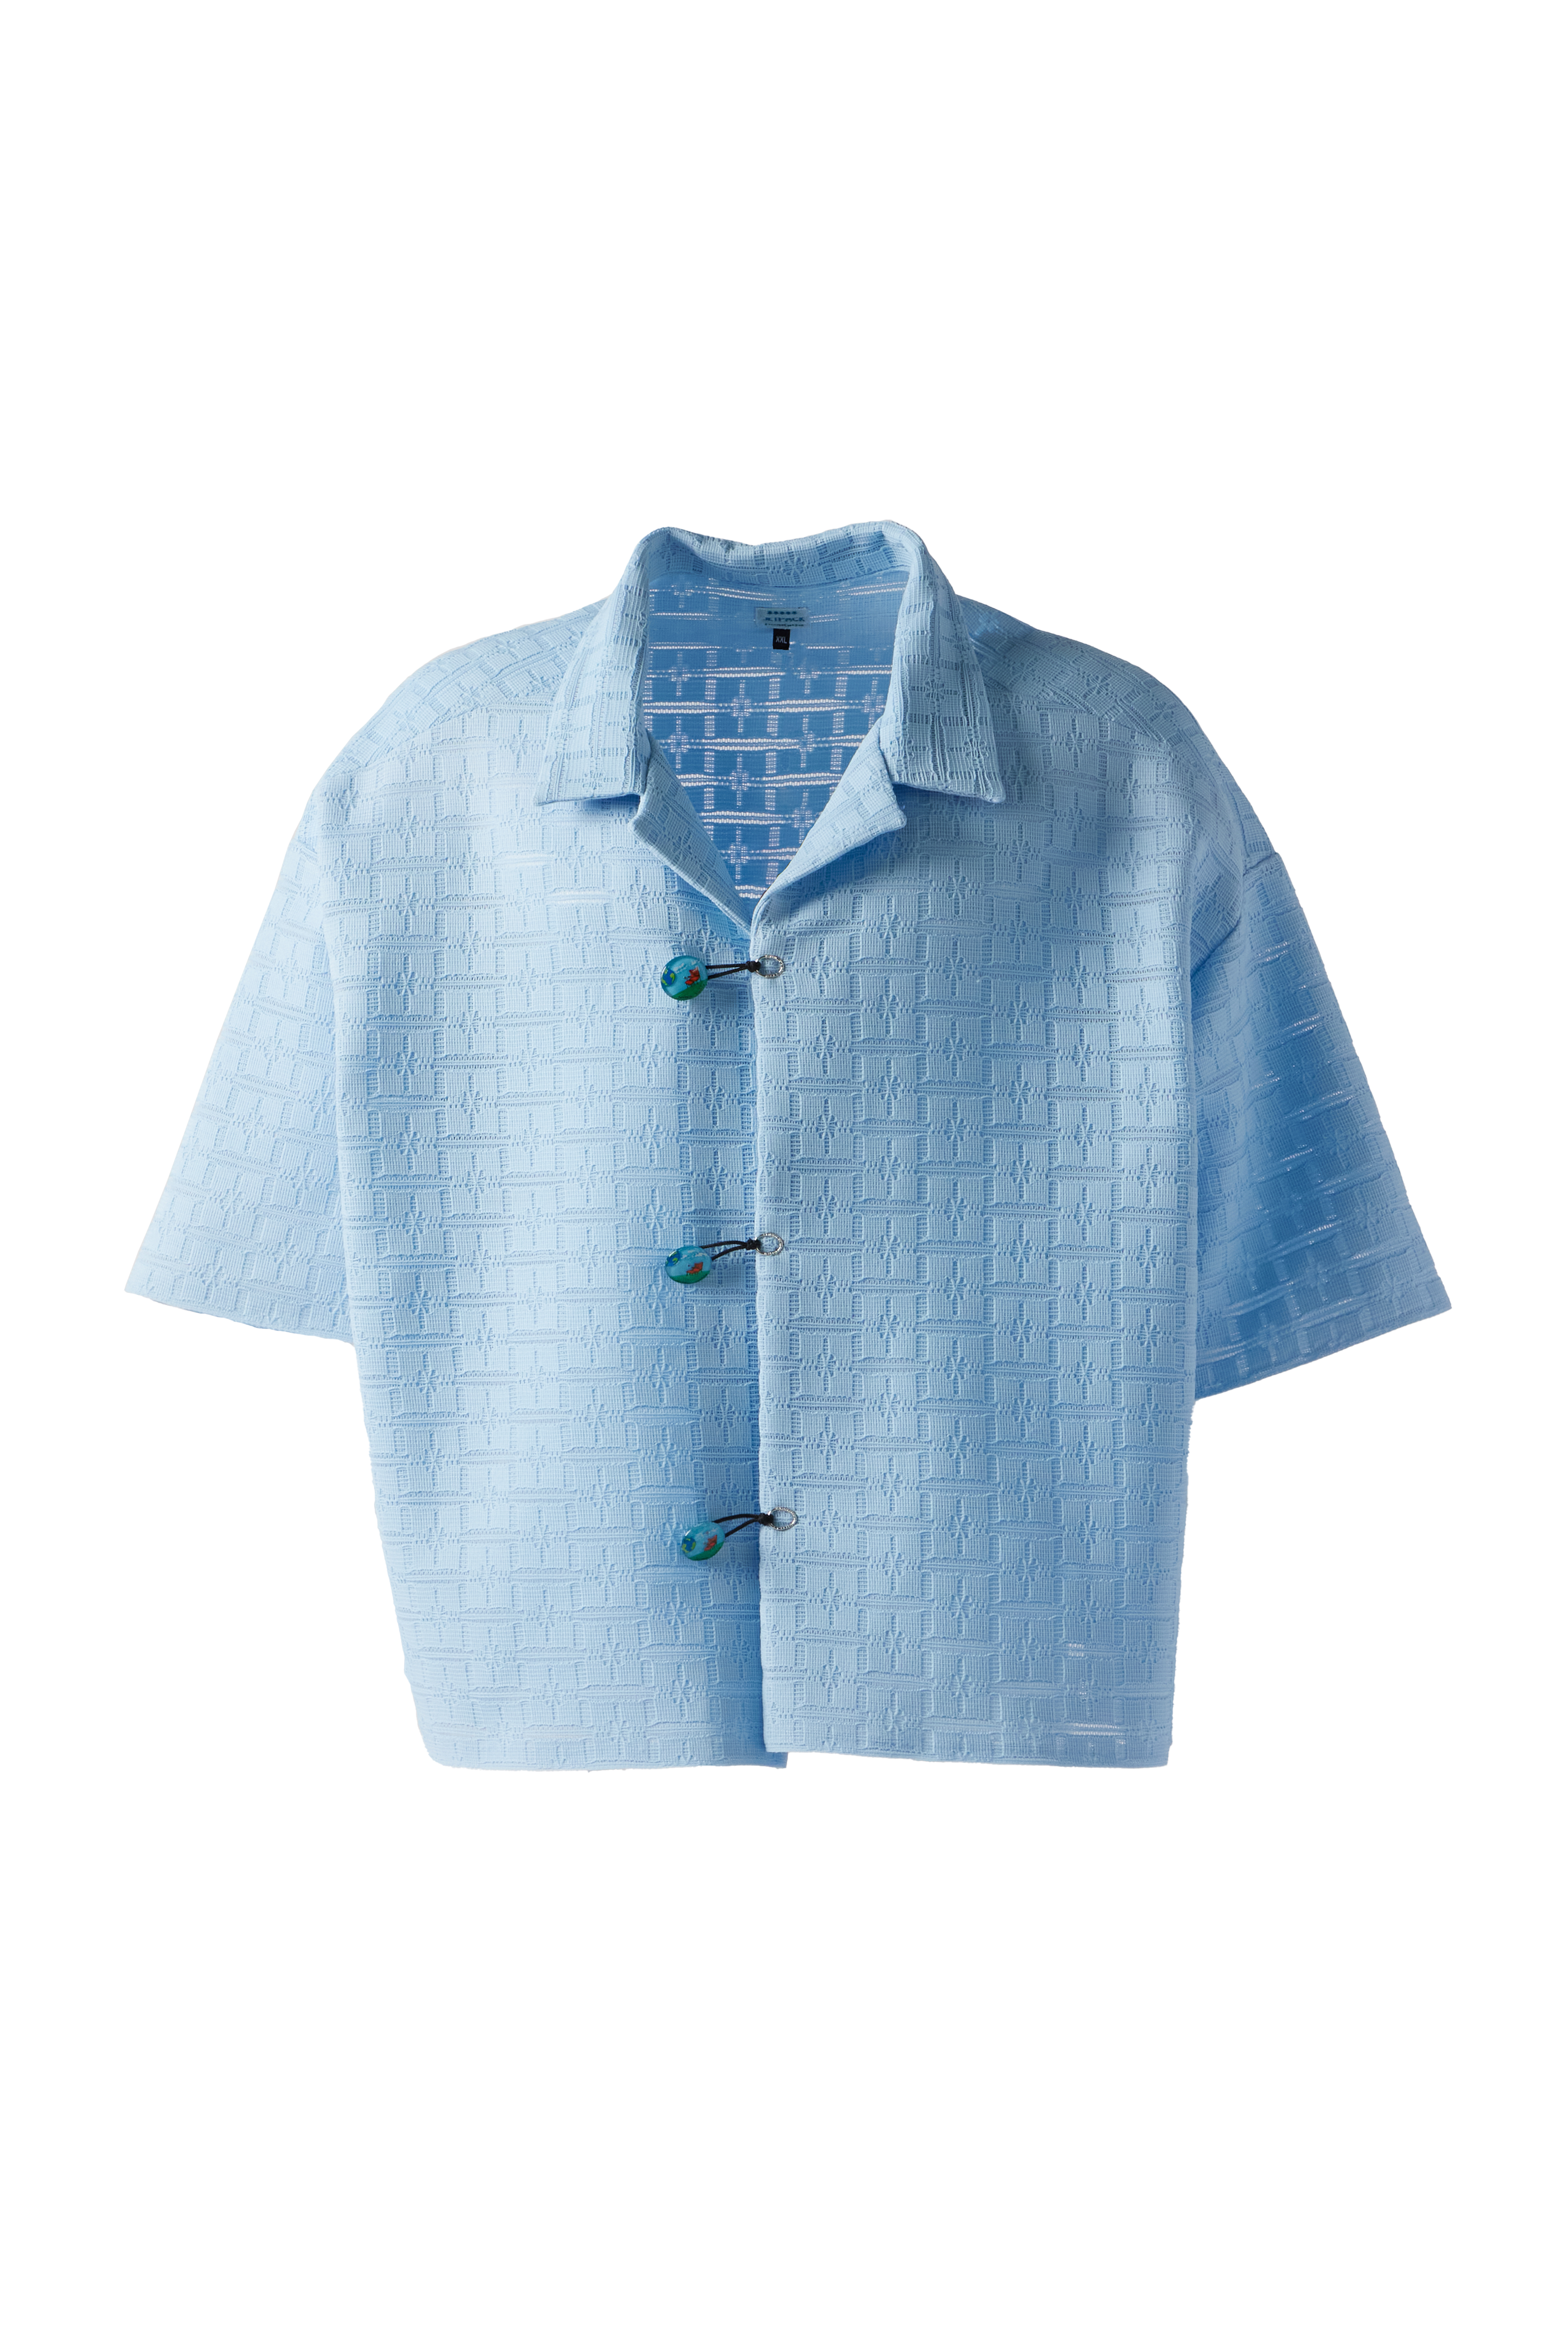 JETPACK HOM(M)E - Retro Knit Shirt product image